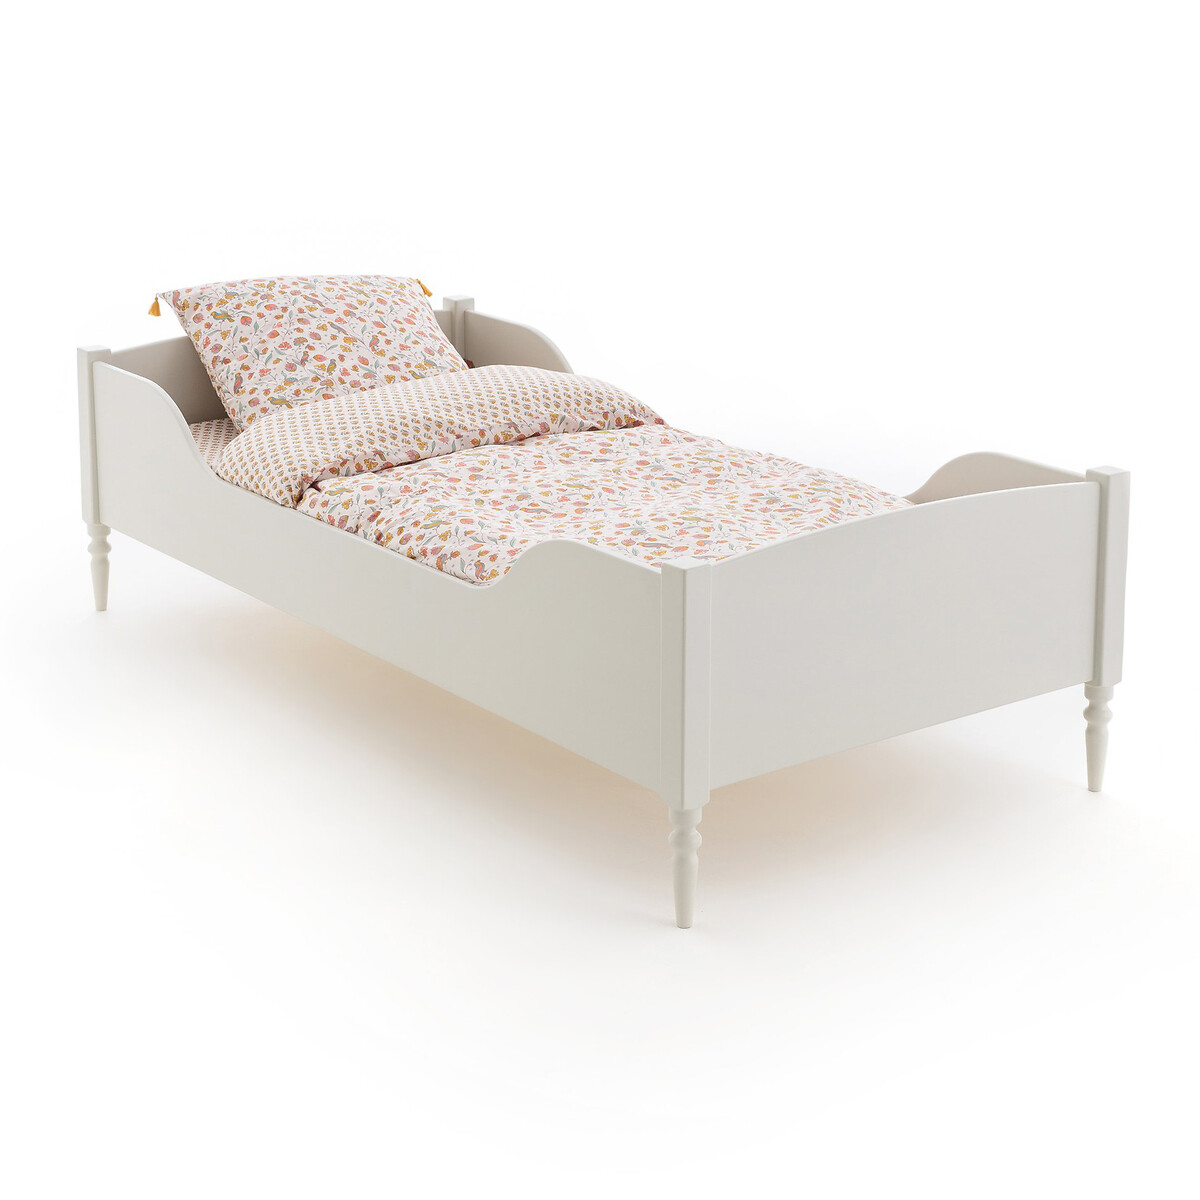 кровать в винтажном стиле с сеткой malu 90 x 190 см каштановый Кровать детская с сеткой CLA 90 x 190 см бежевый